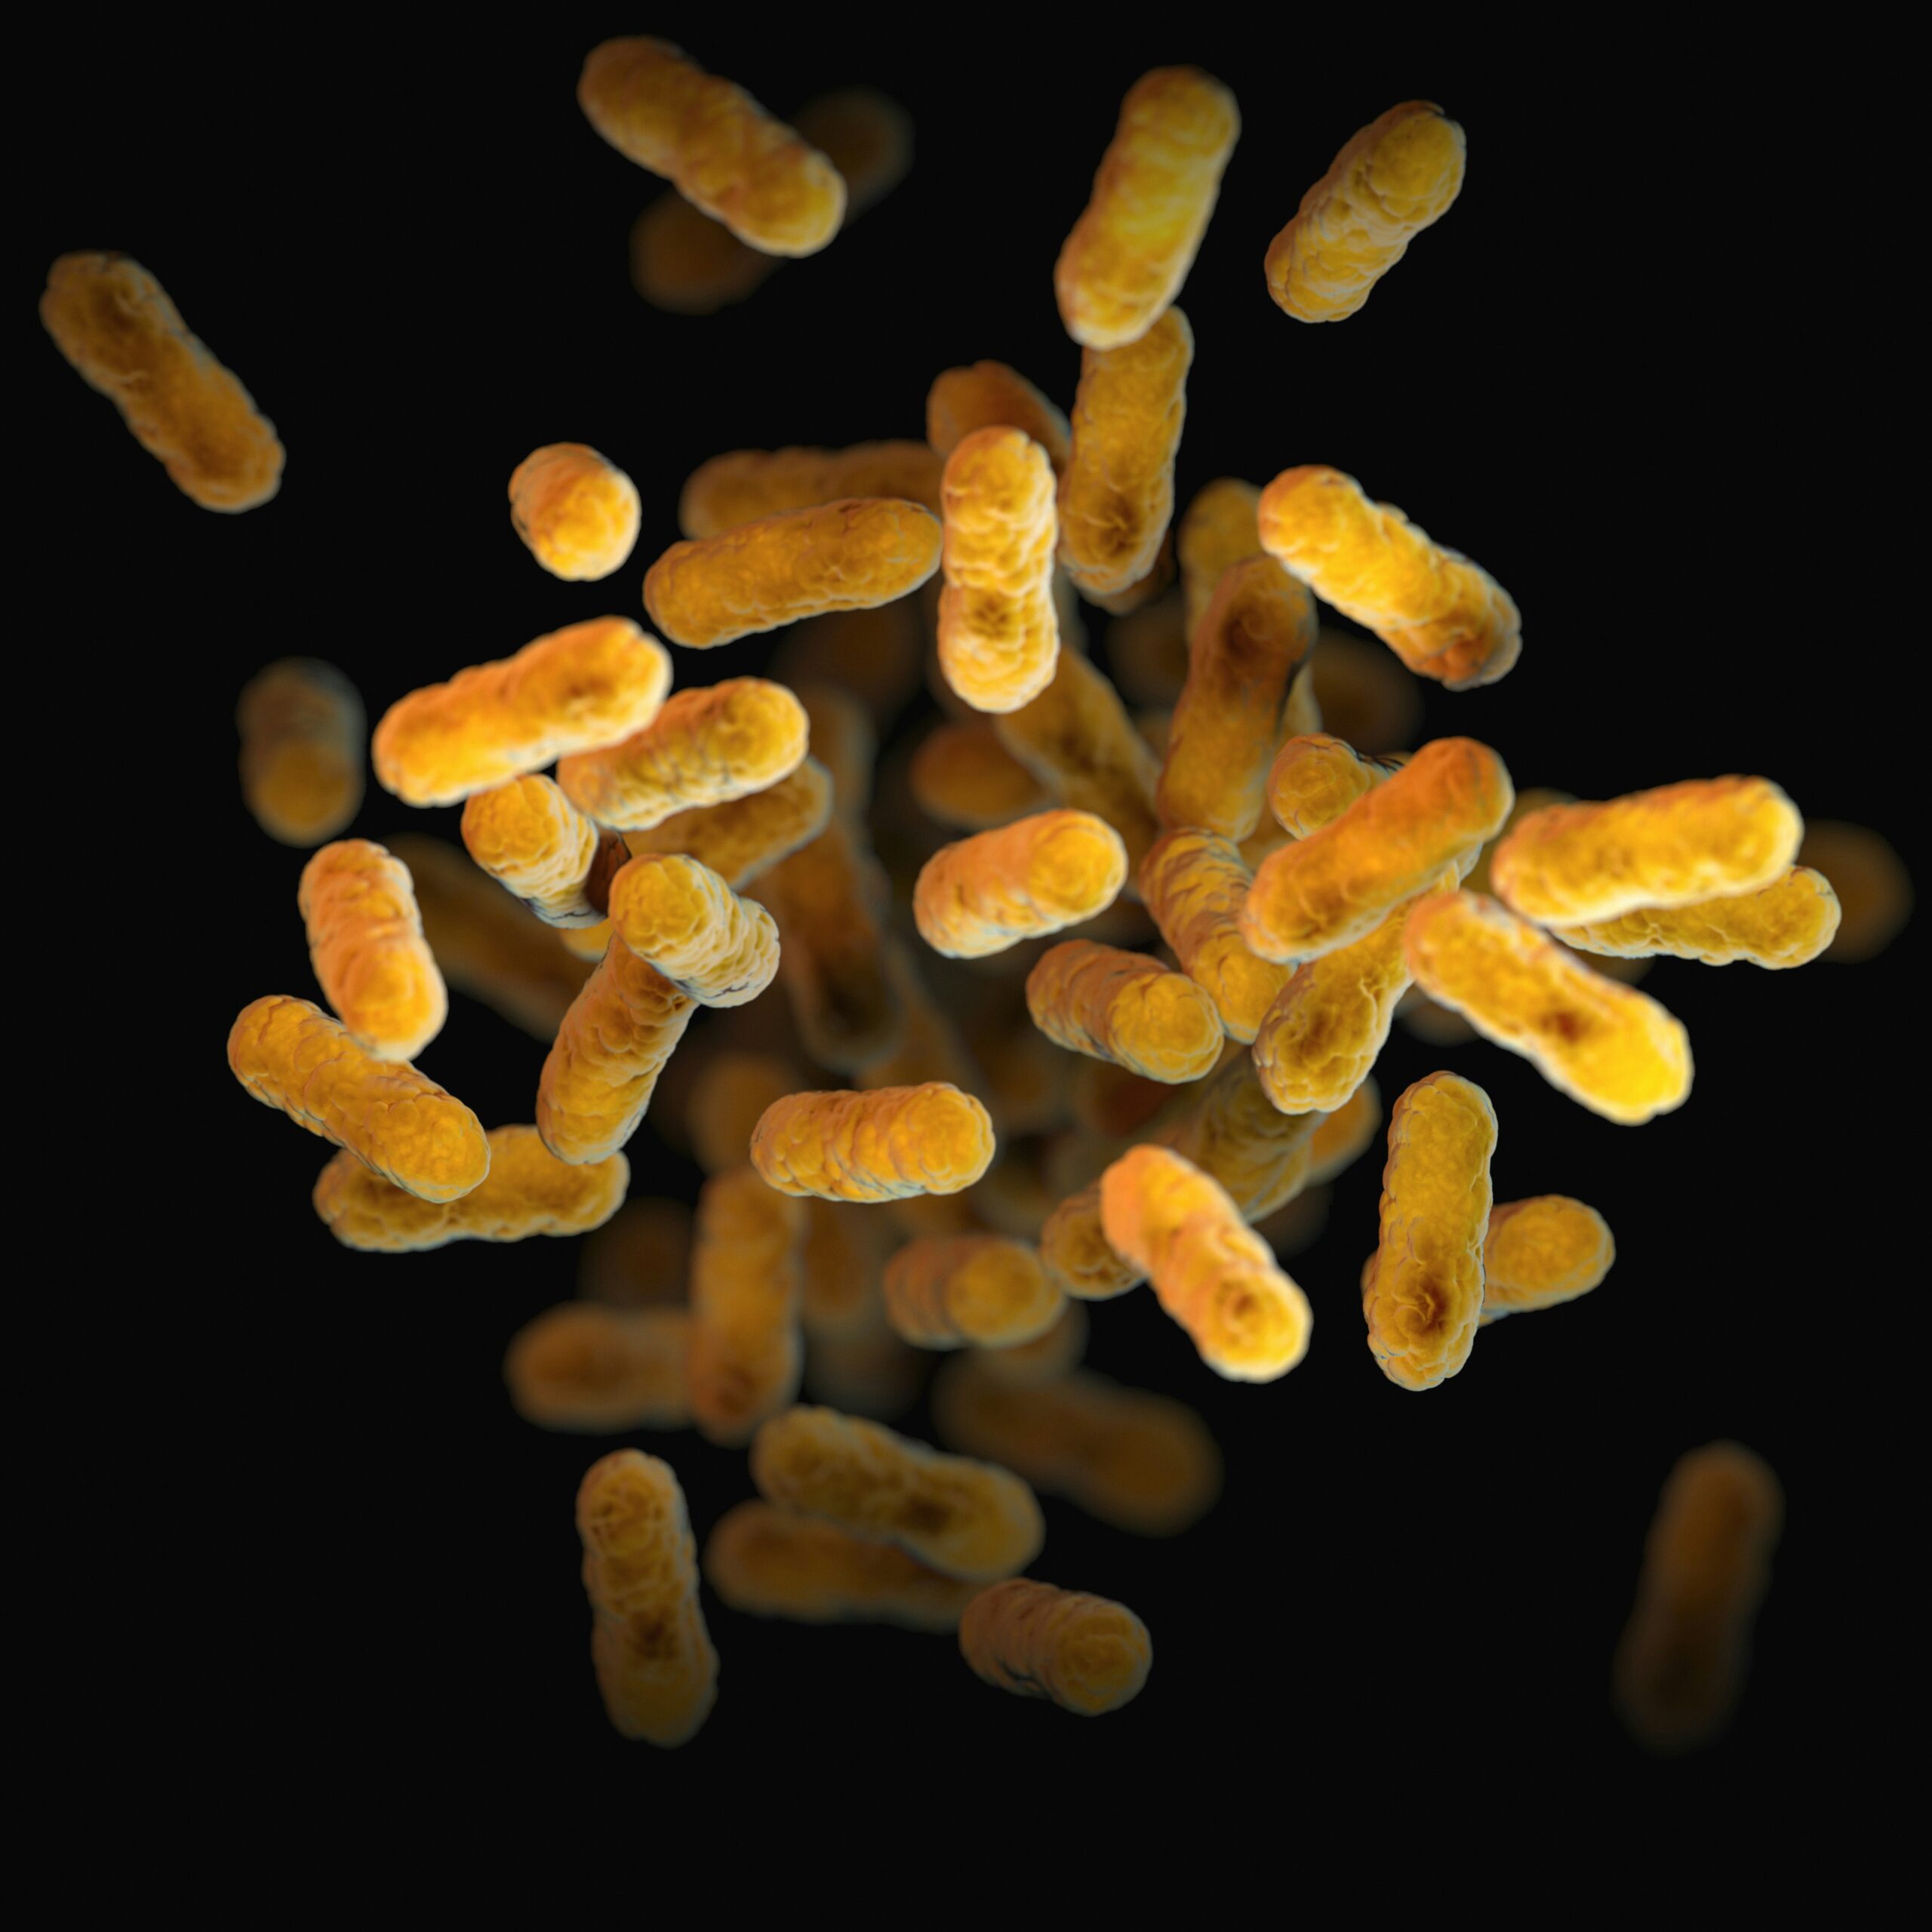 microrganismi luca simone cocolin microbiologia coltivato agricoltura ricerca